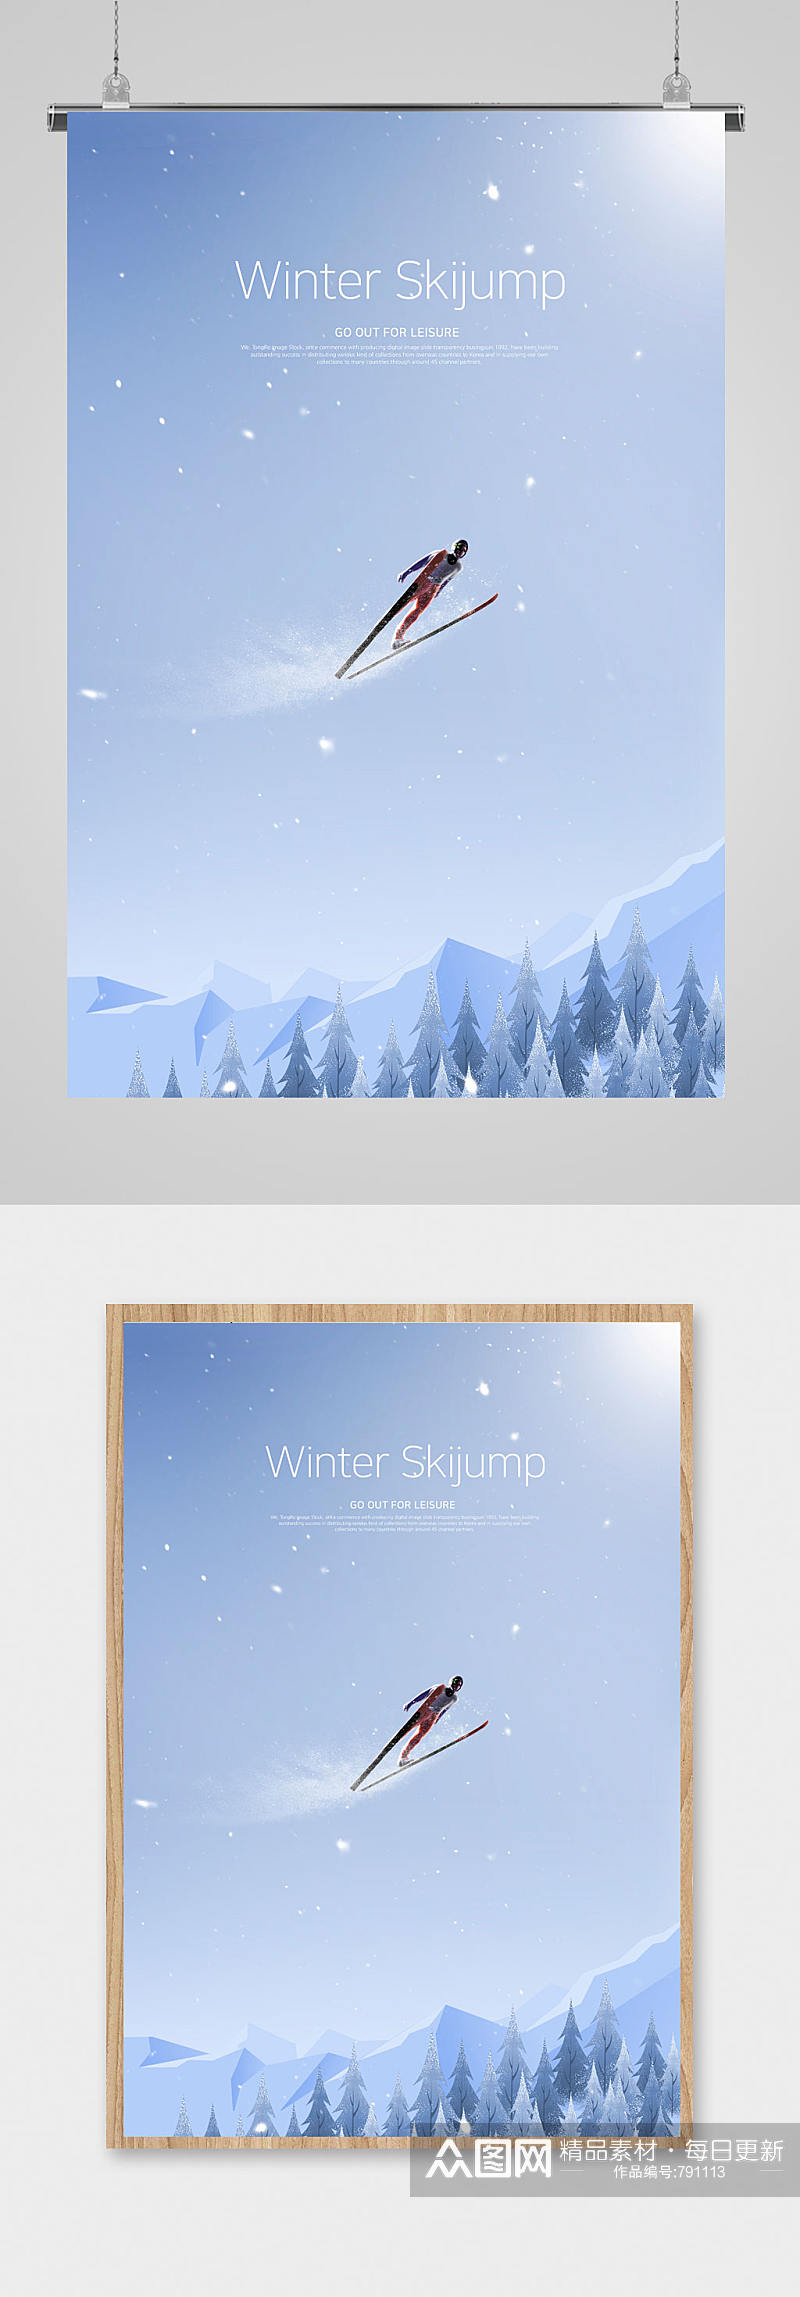 冬季滑雪主题海报素材